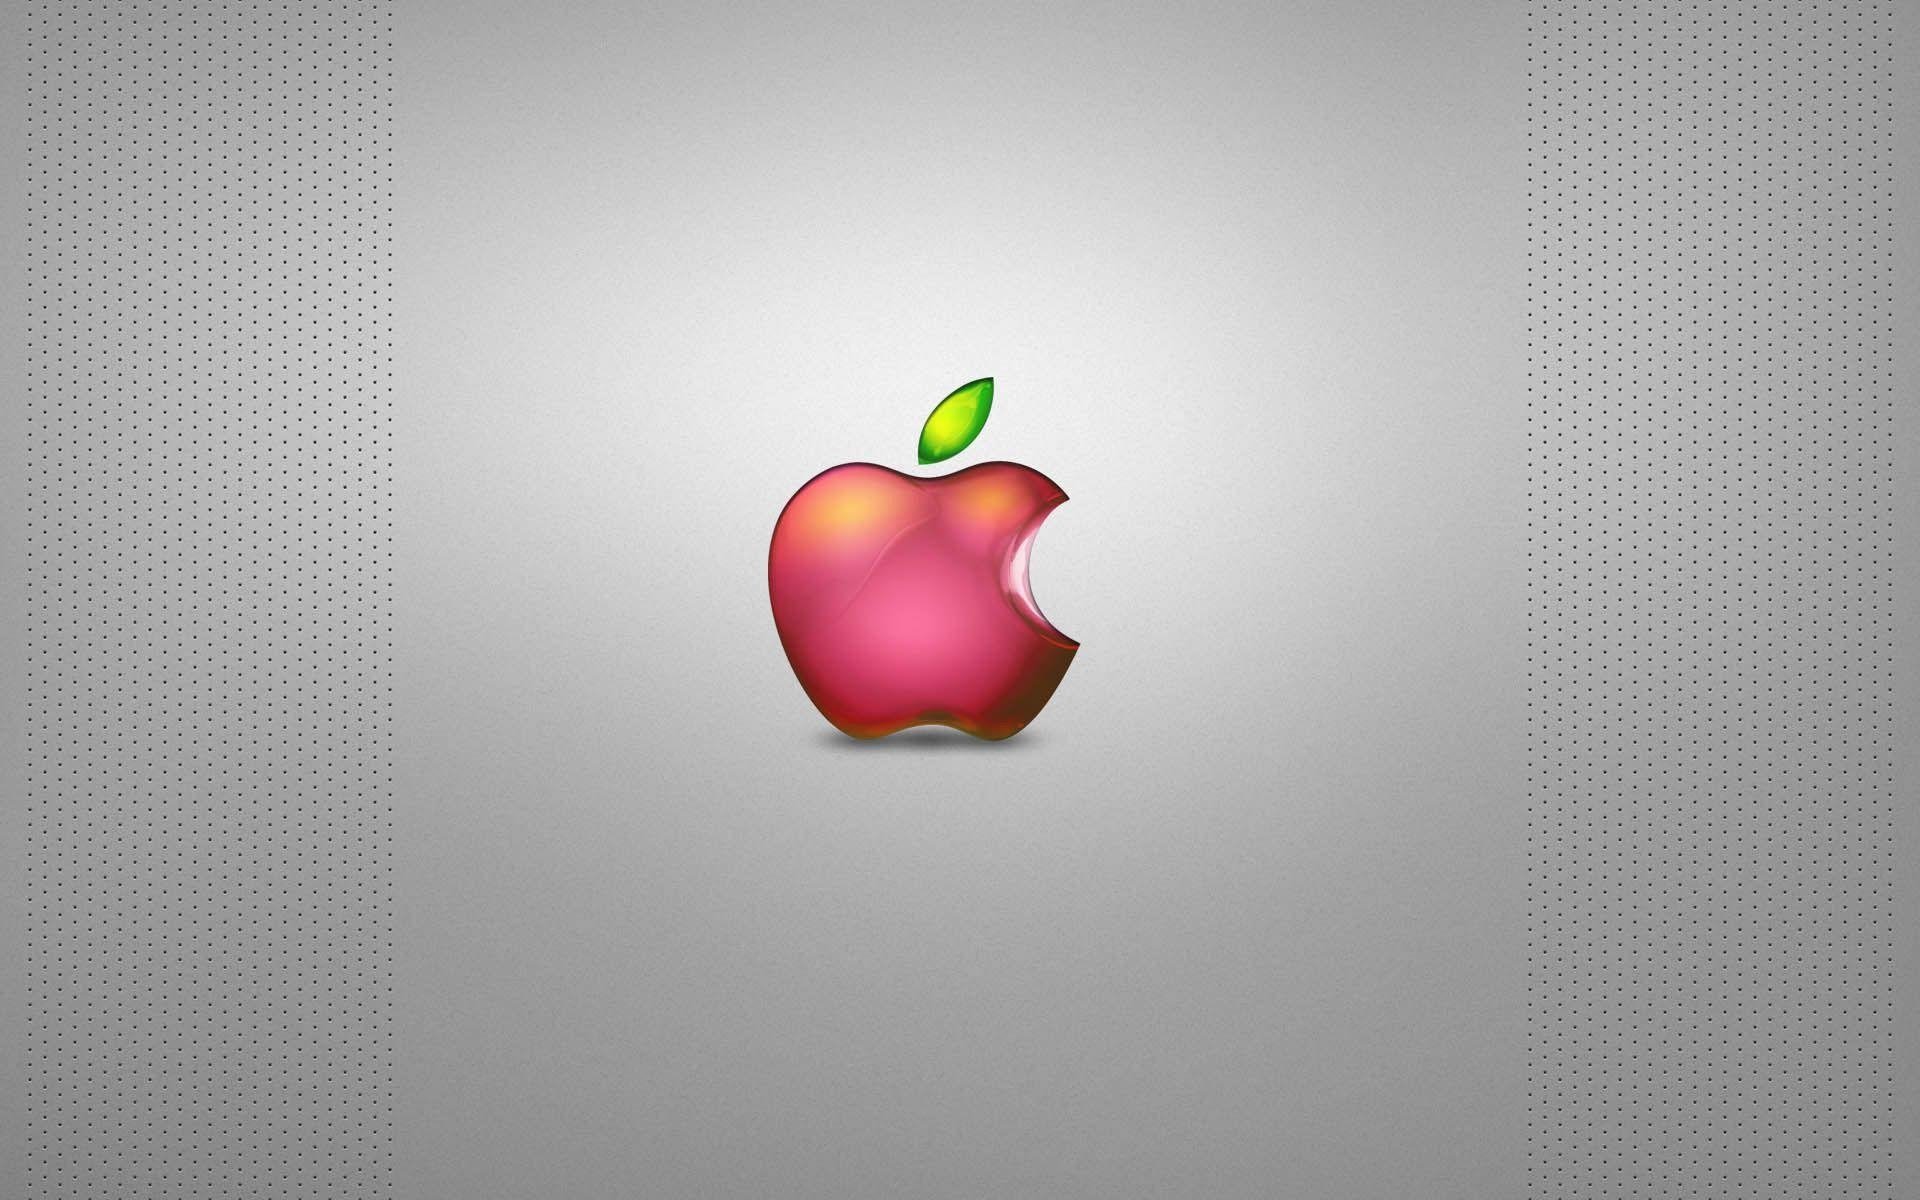 Обои на айфон яблоко. Логотип Apple. Яблоко айфон. Яблочко Эппл. Фон Apple.